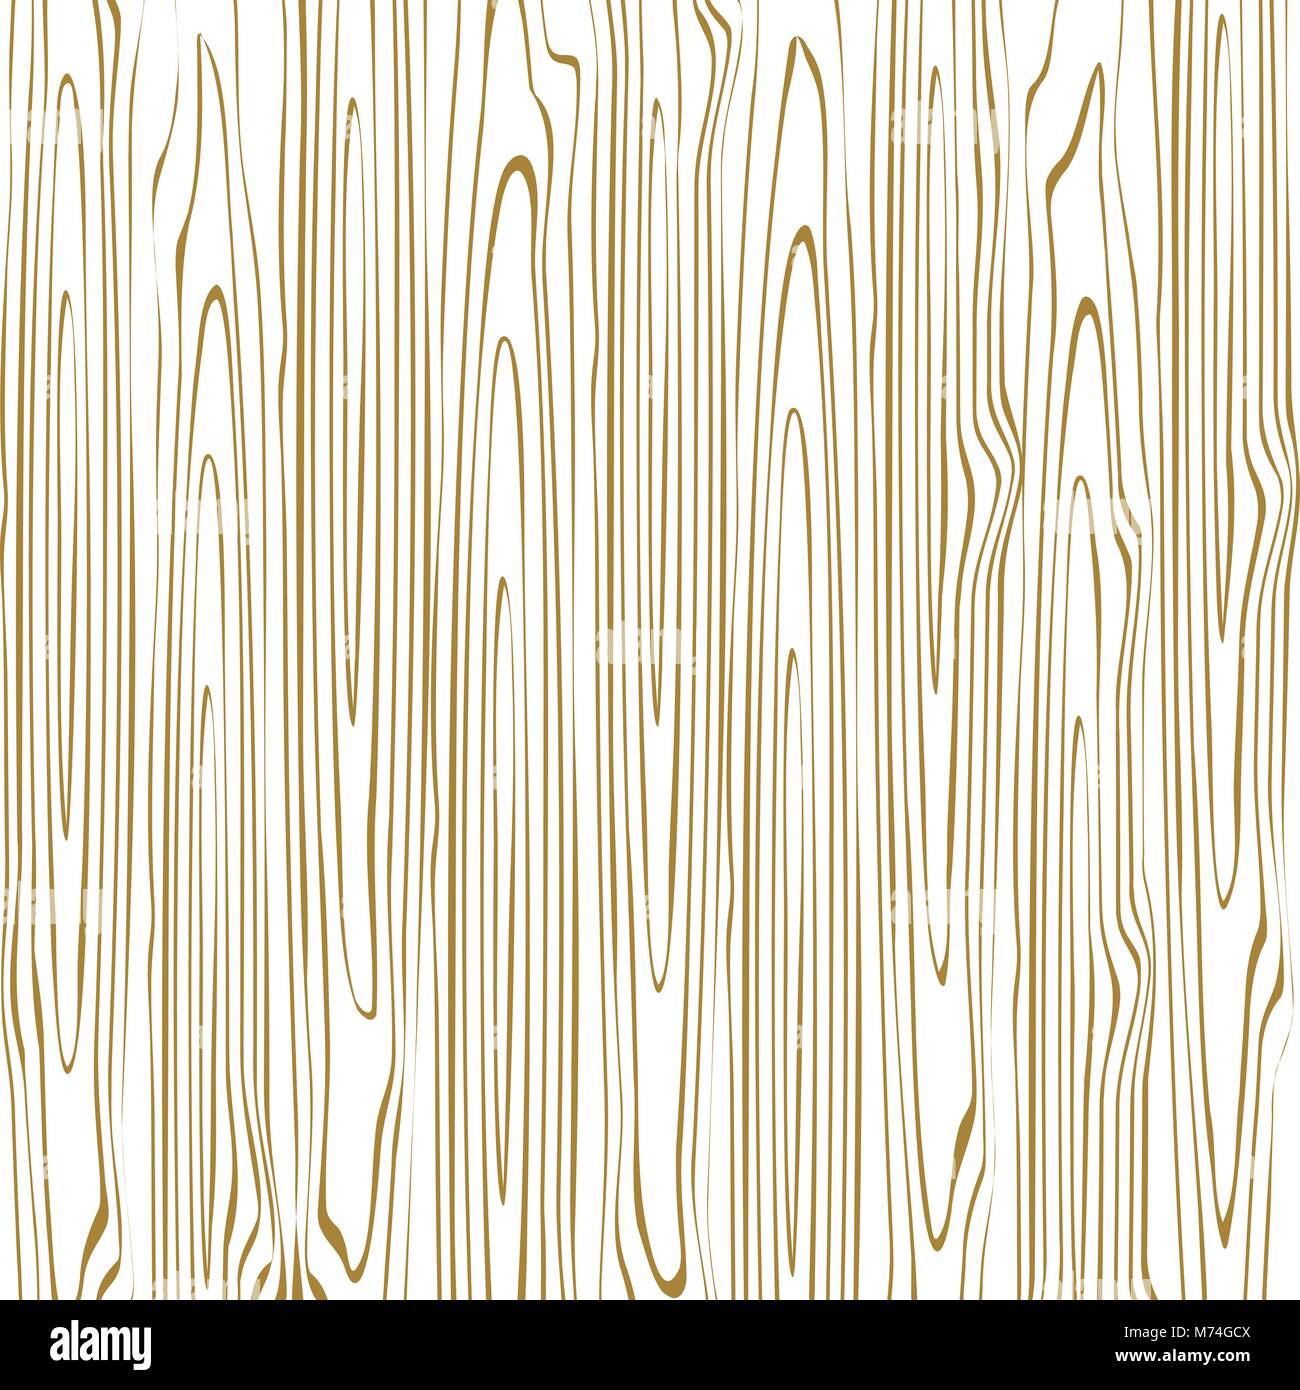 Holz Textur Hintergrund Vector Illustration Stock Vektor